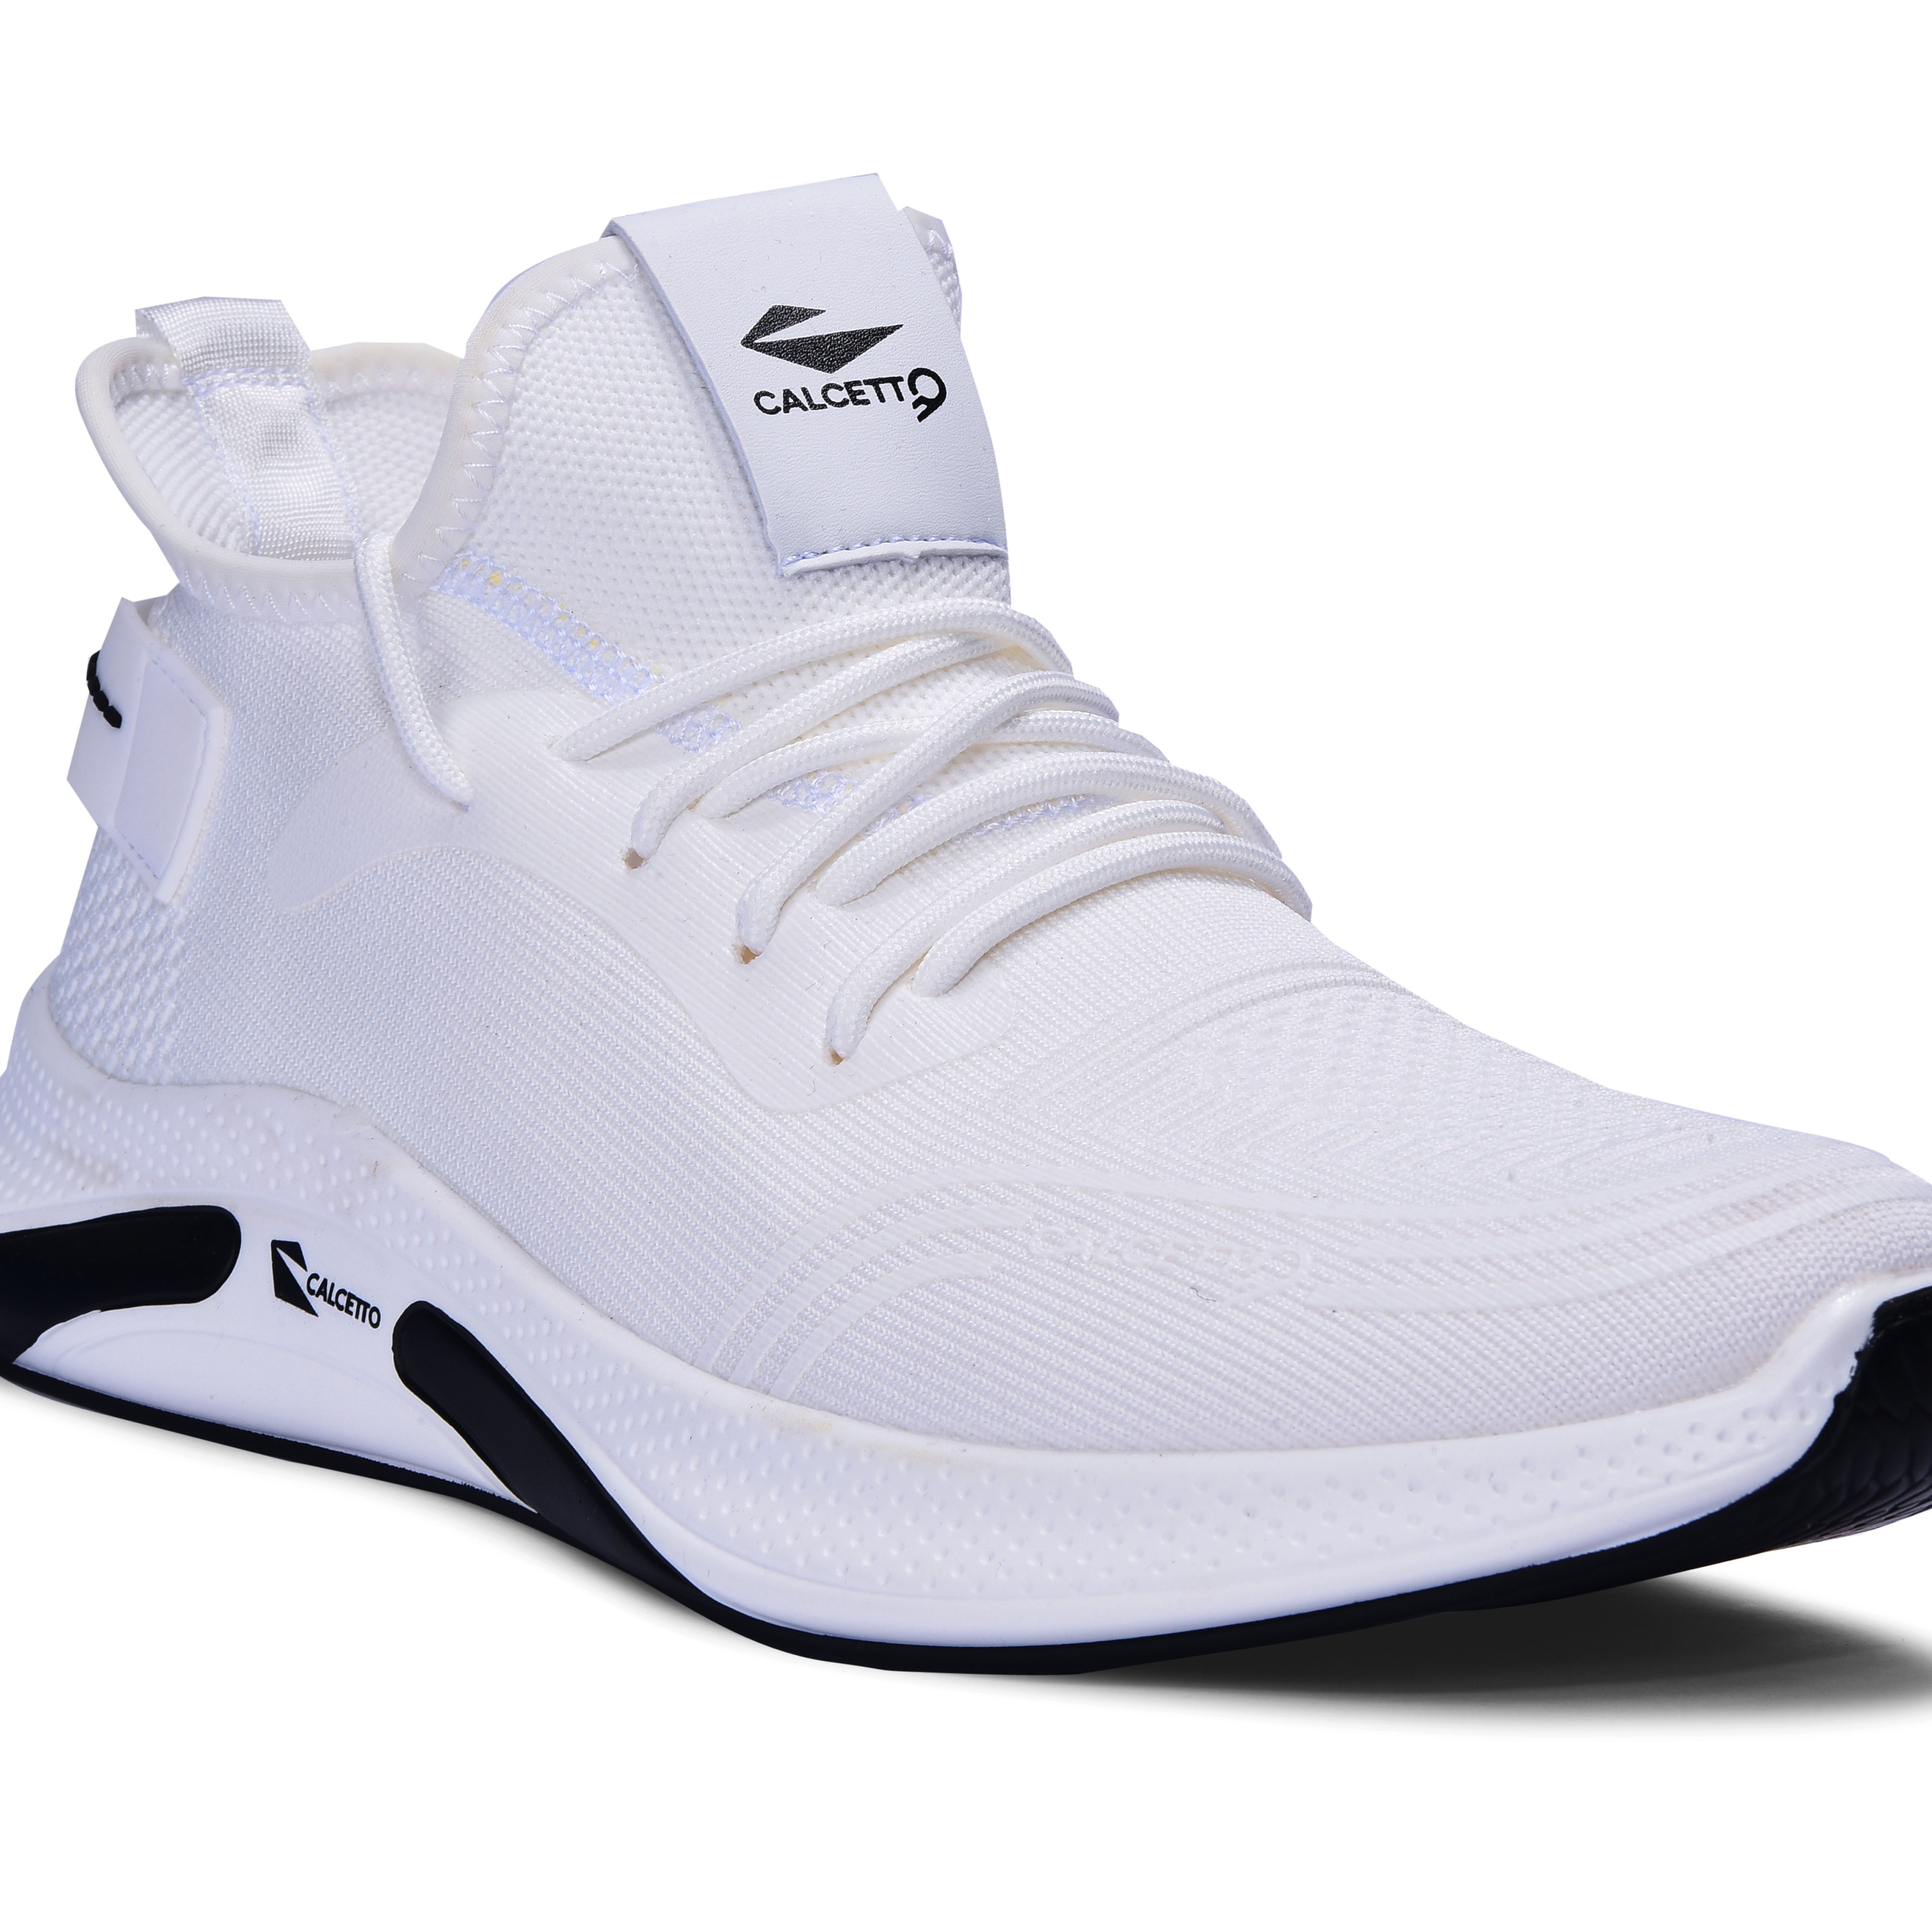 Calcetto CLT-0982 White Casual Shoe For Men